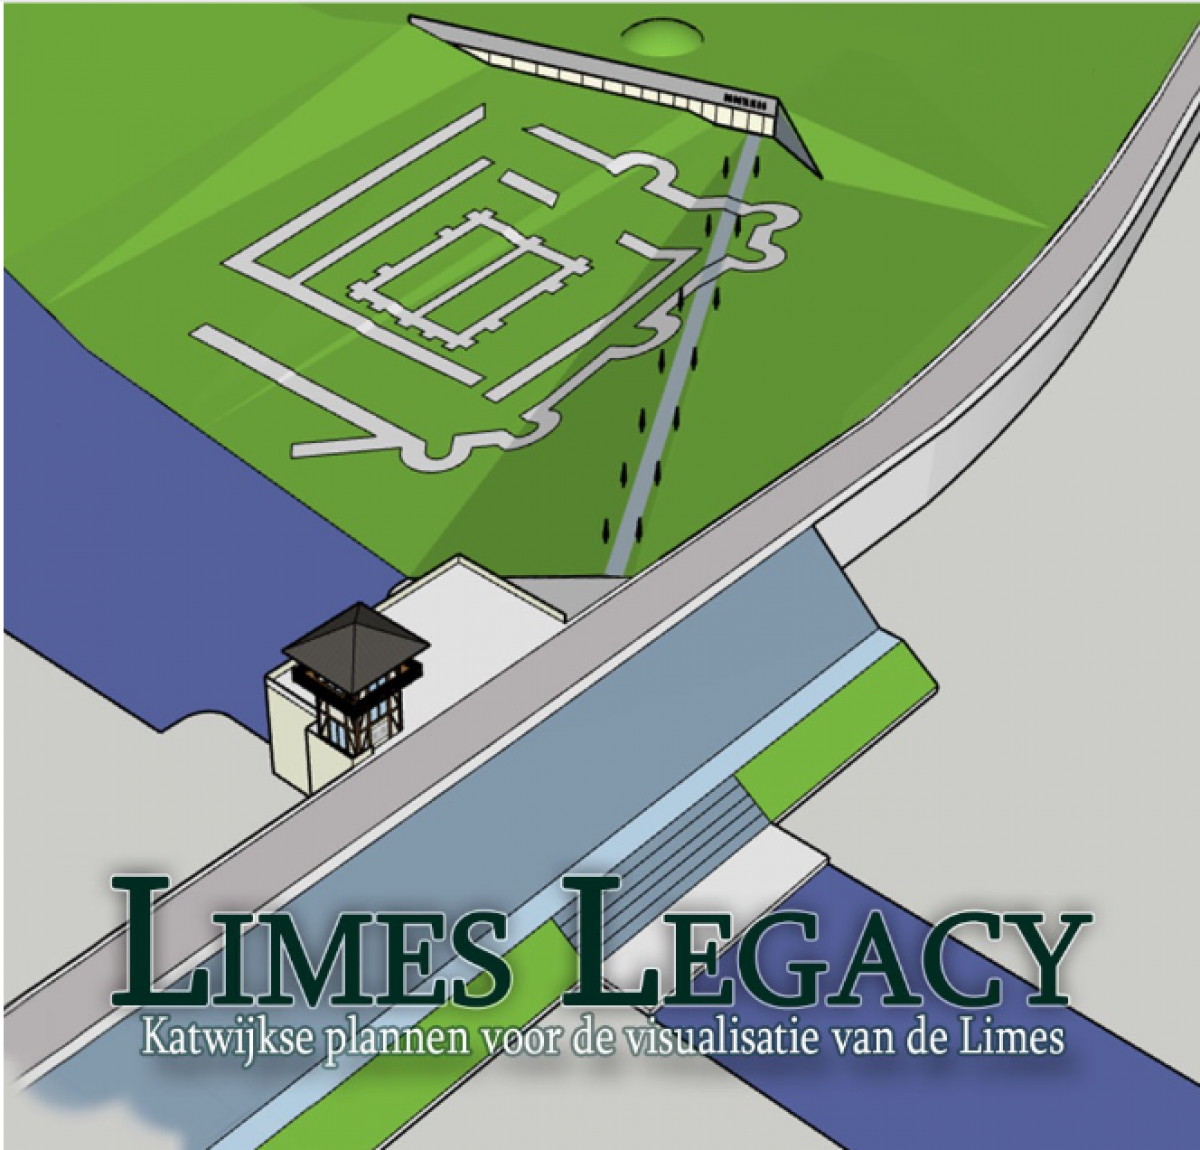 Grootse plannen voor de visualisatie van de Romeinse Limes (Unesco Werelderfgoed) in Katwijk